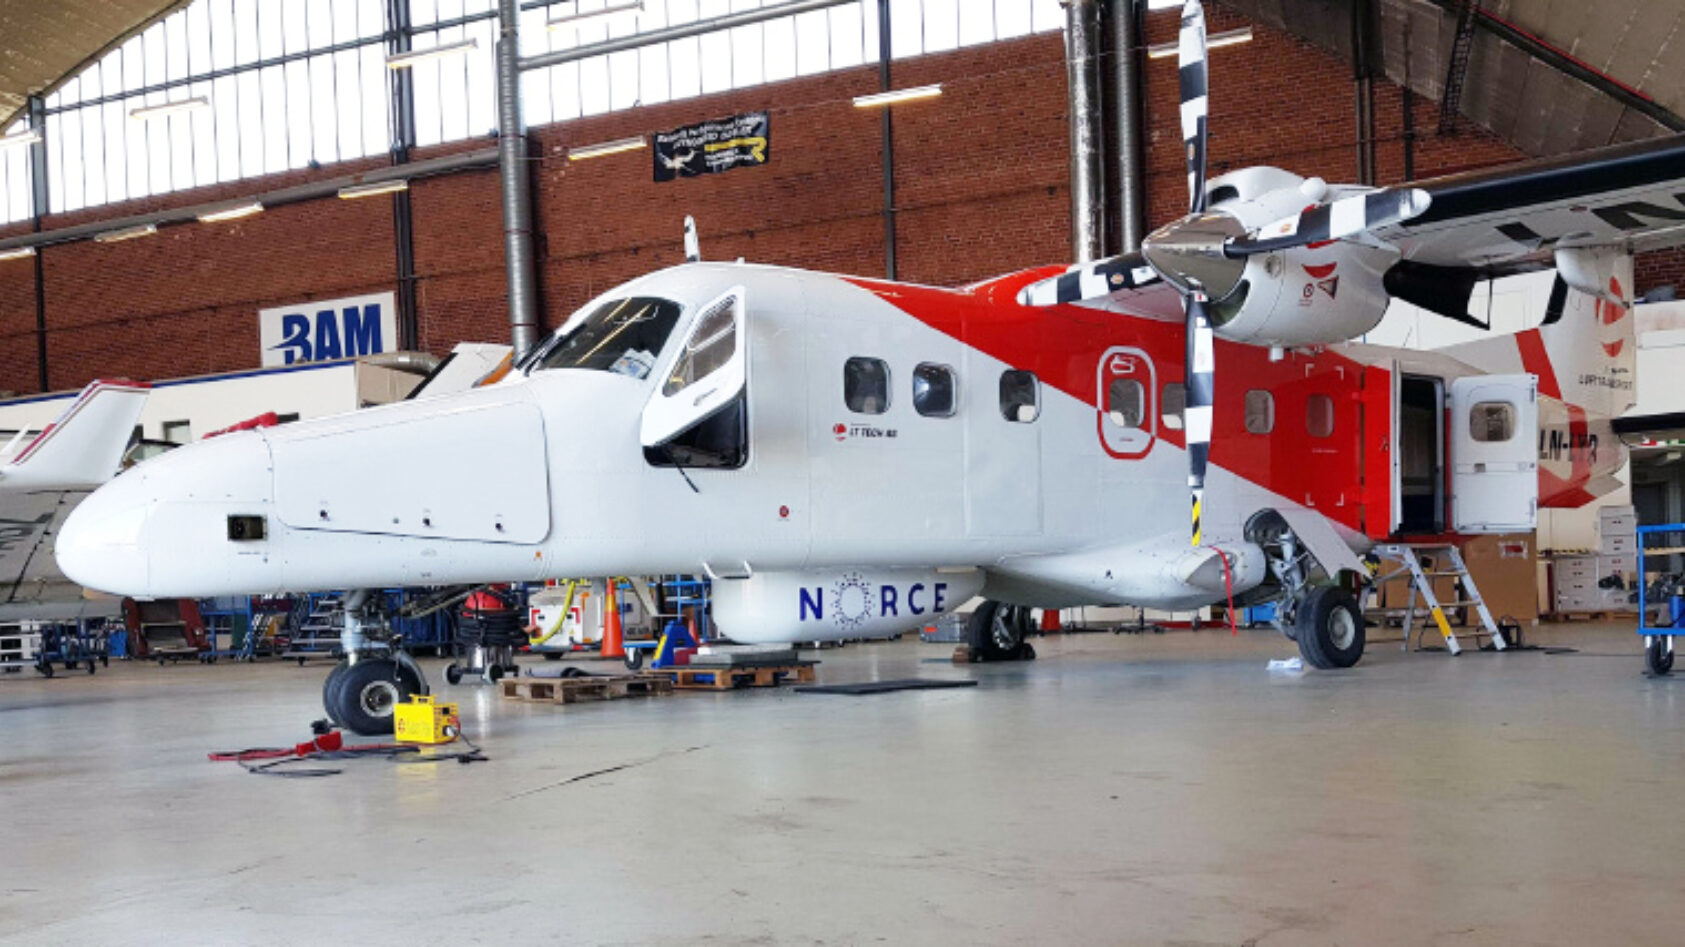 BAM, Her er LN-LYR i hangaren hos Bromma Air Maintenance, hvor pod'en under flykroppen blir permanent påmontert., IMG 3669 web, , 